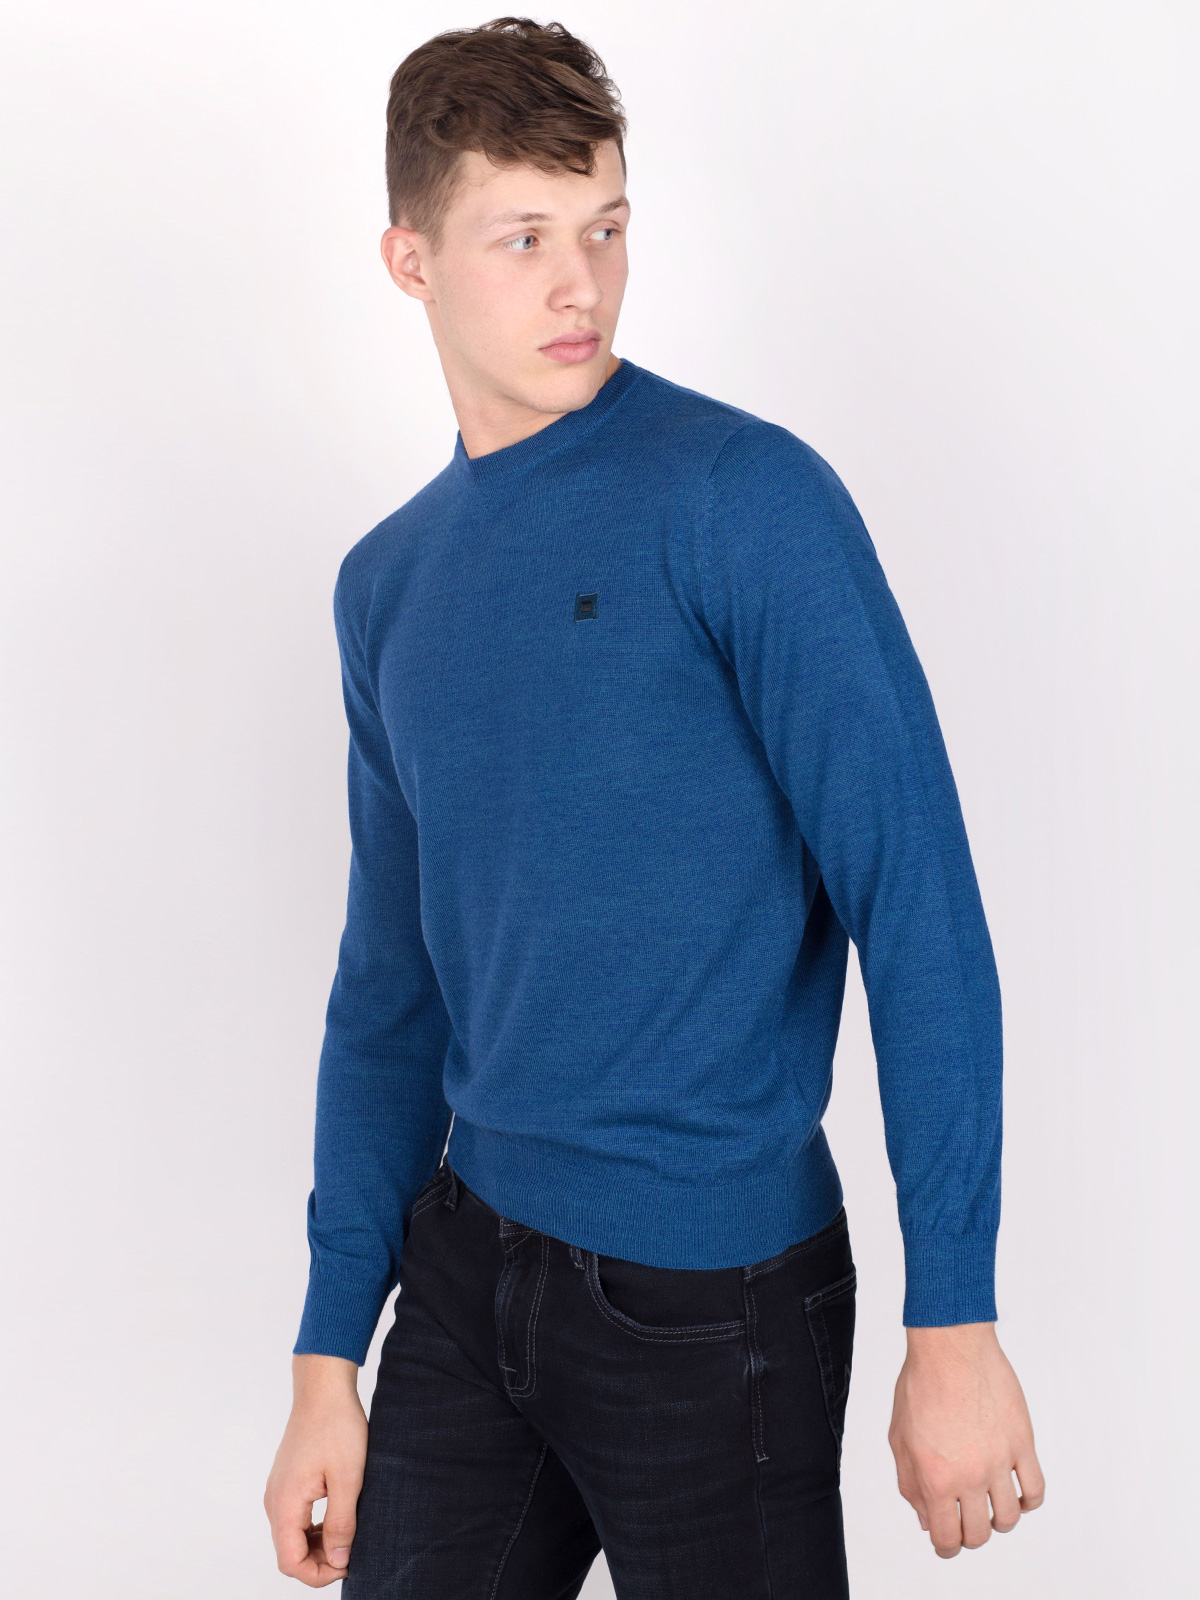 Петролено син пуловер с вълна мерино - 33079 39.00 лв img2